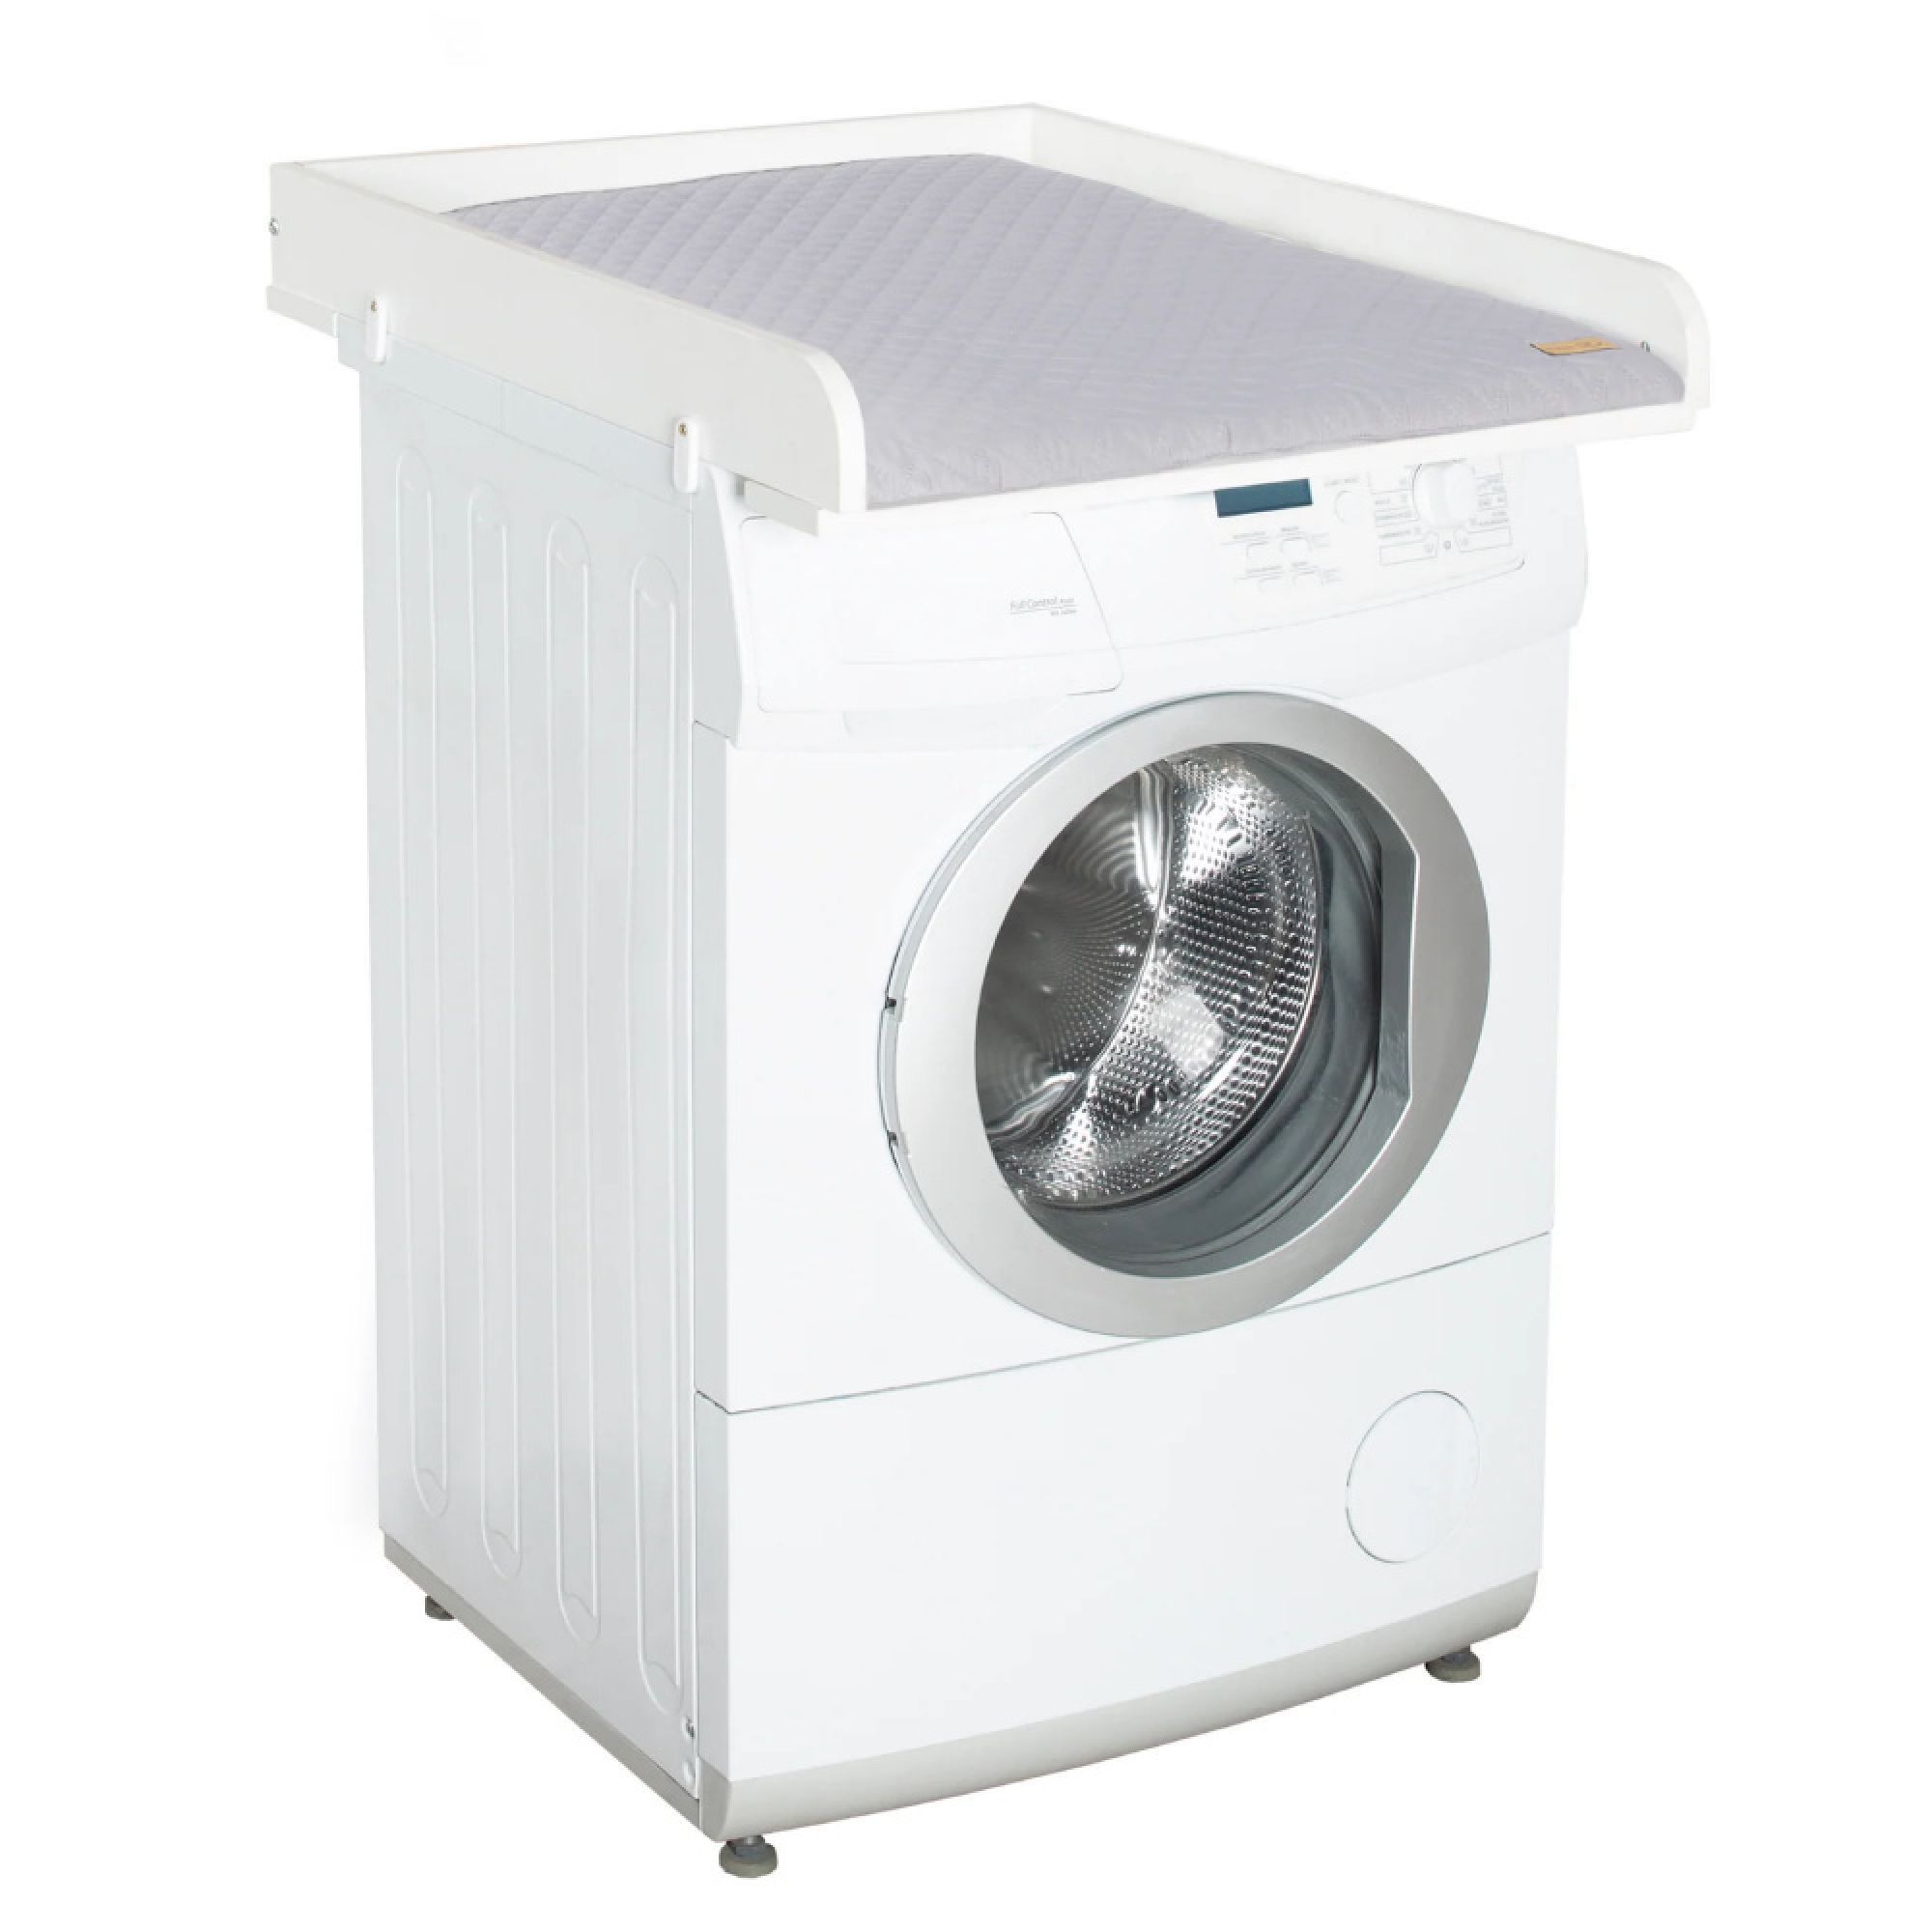 Plan à langer pour les machines à laver Roba style blanc - Made in